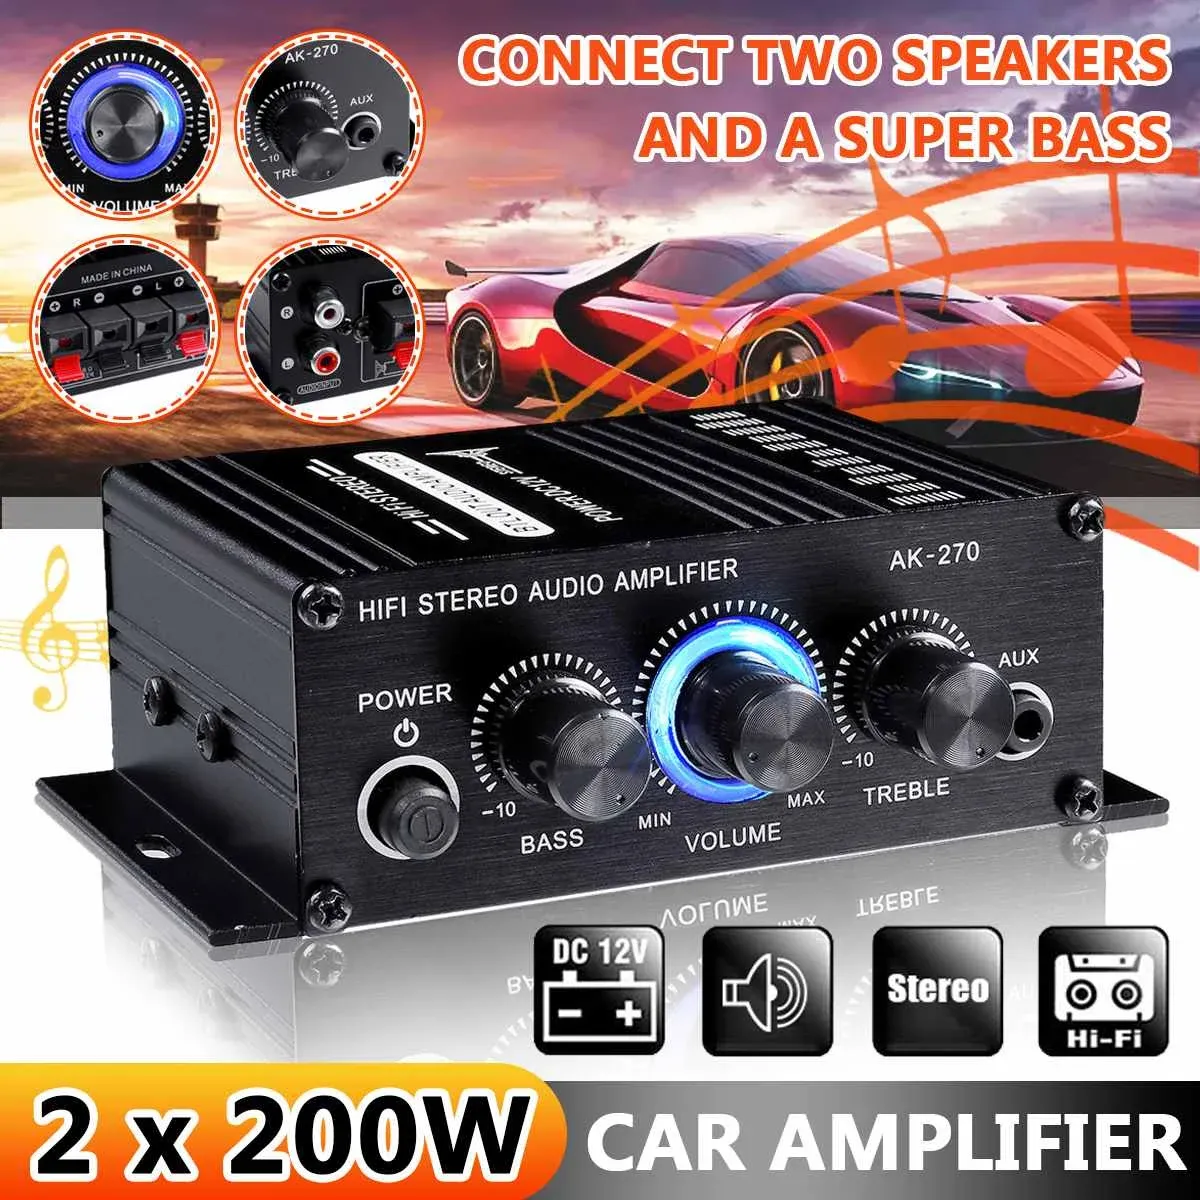 Amplificateur AK370 / 270/170 400W 12V HIFI Power Amplificateur stéréo Home Car Bass Amp Amp Carteur de haut-parleurs Classe D Car Home Sound Power AMP AUX